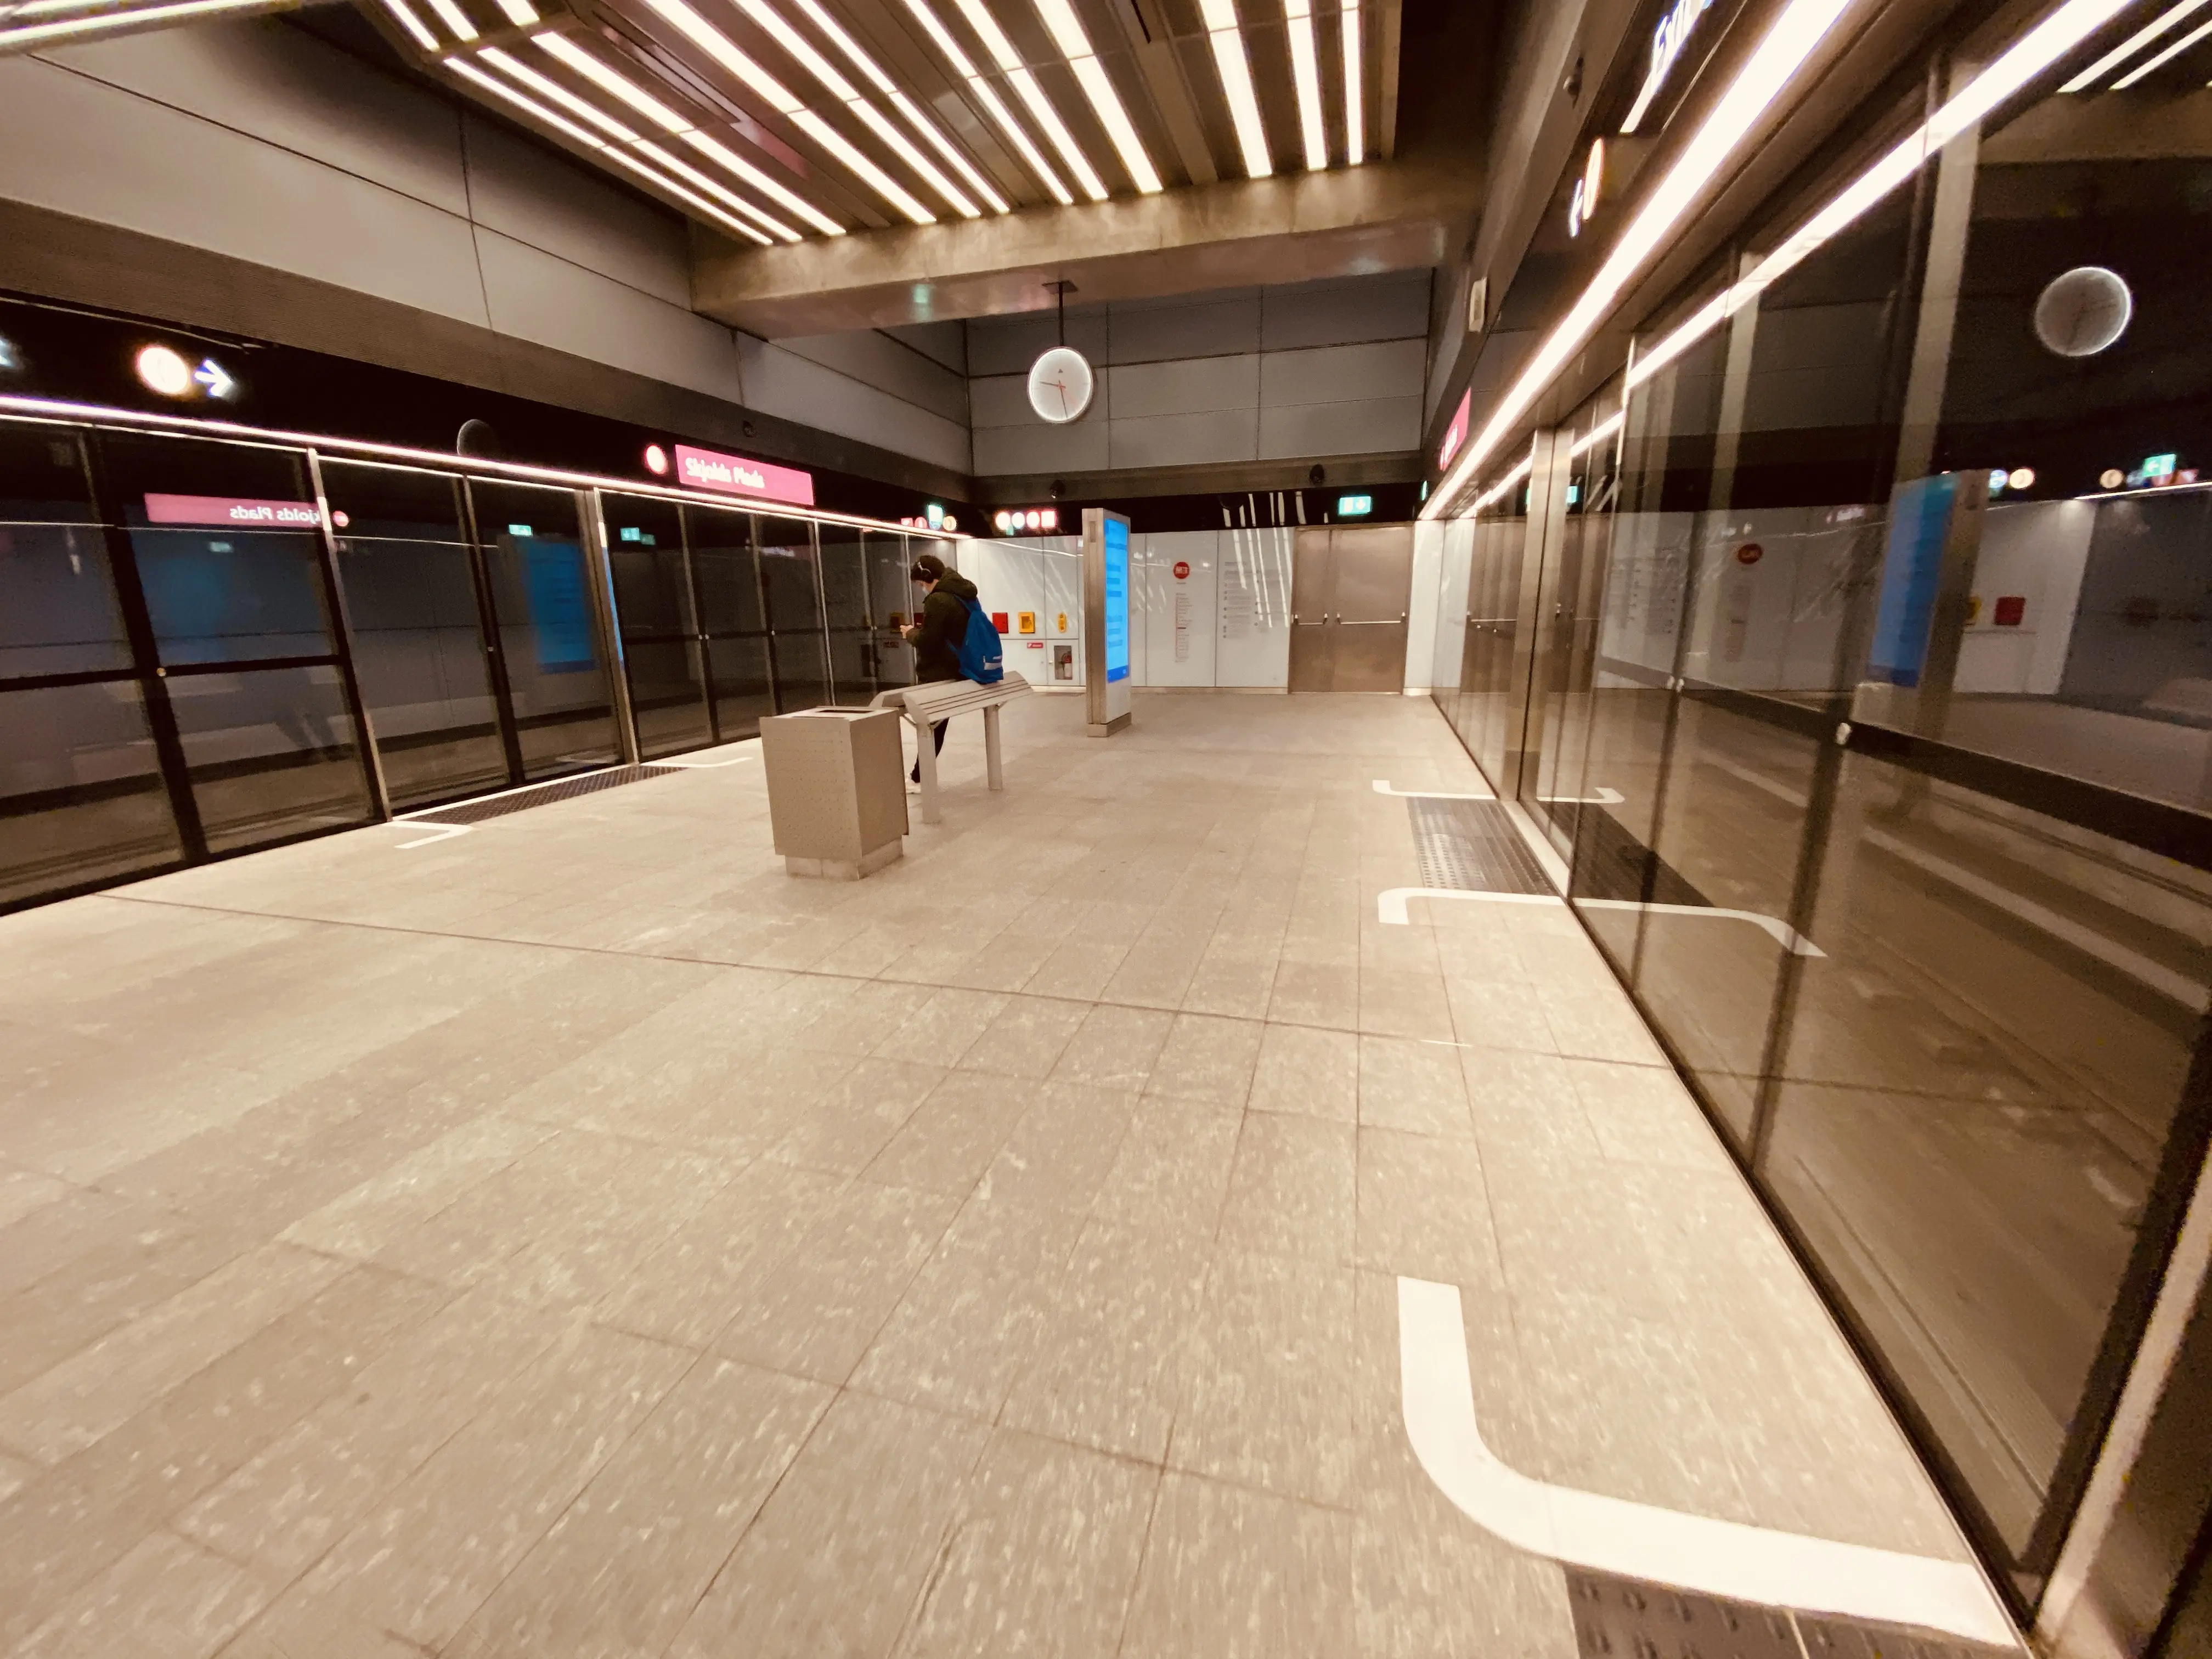 Billede af Skjolds Plads Metrostation.